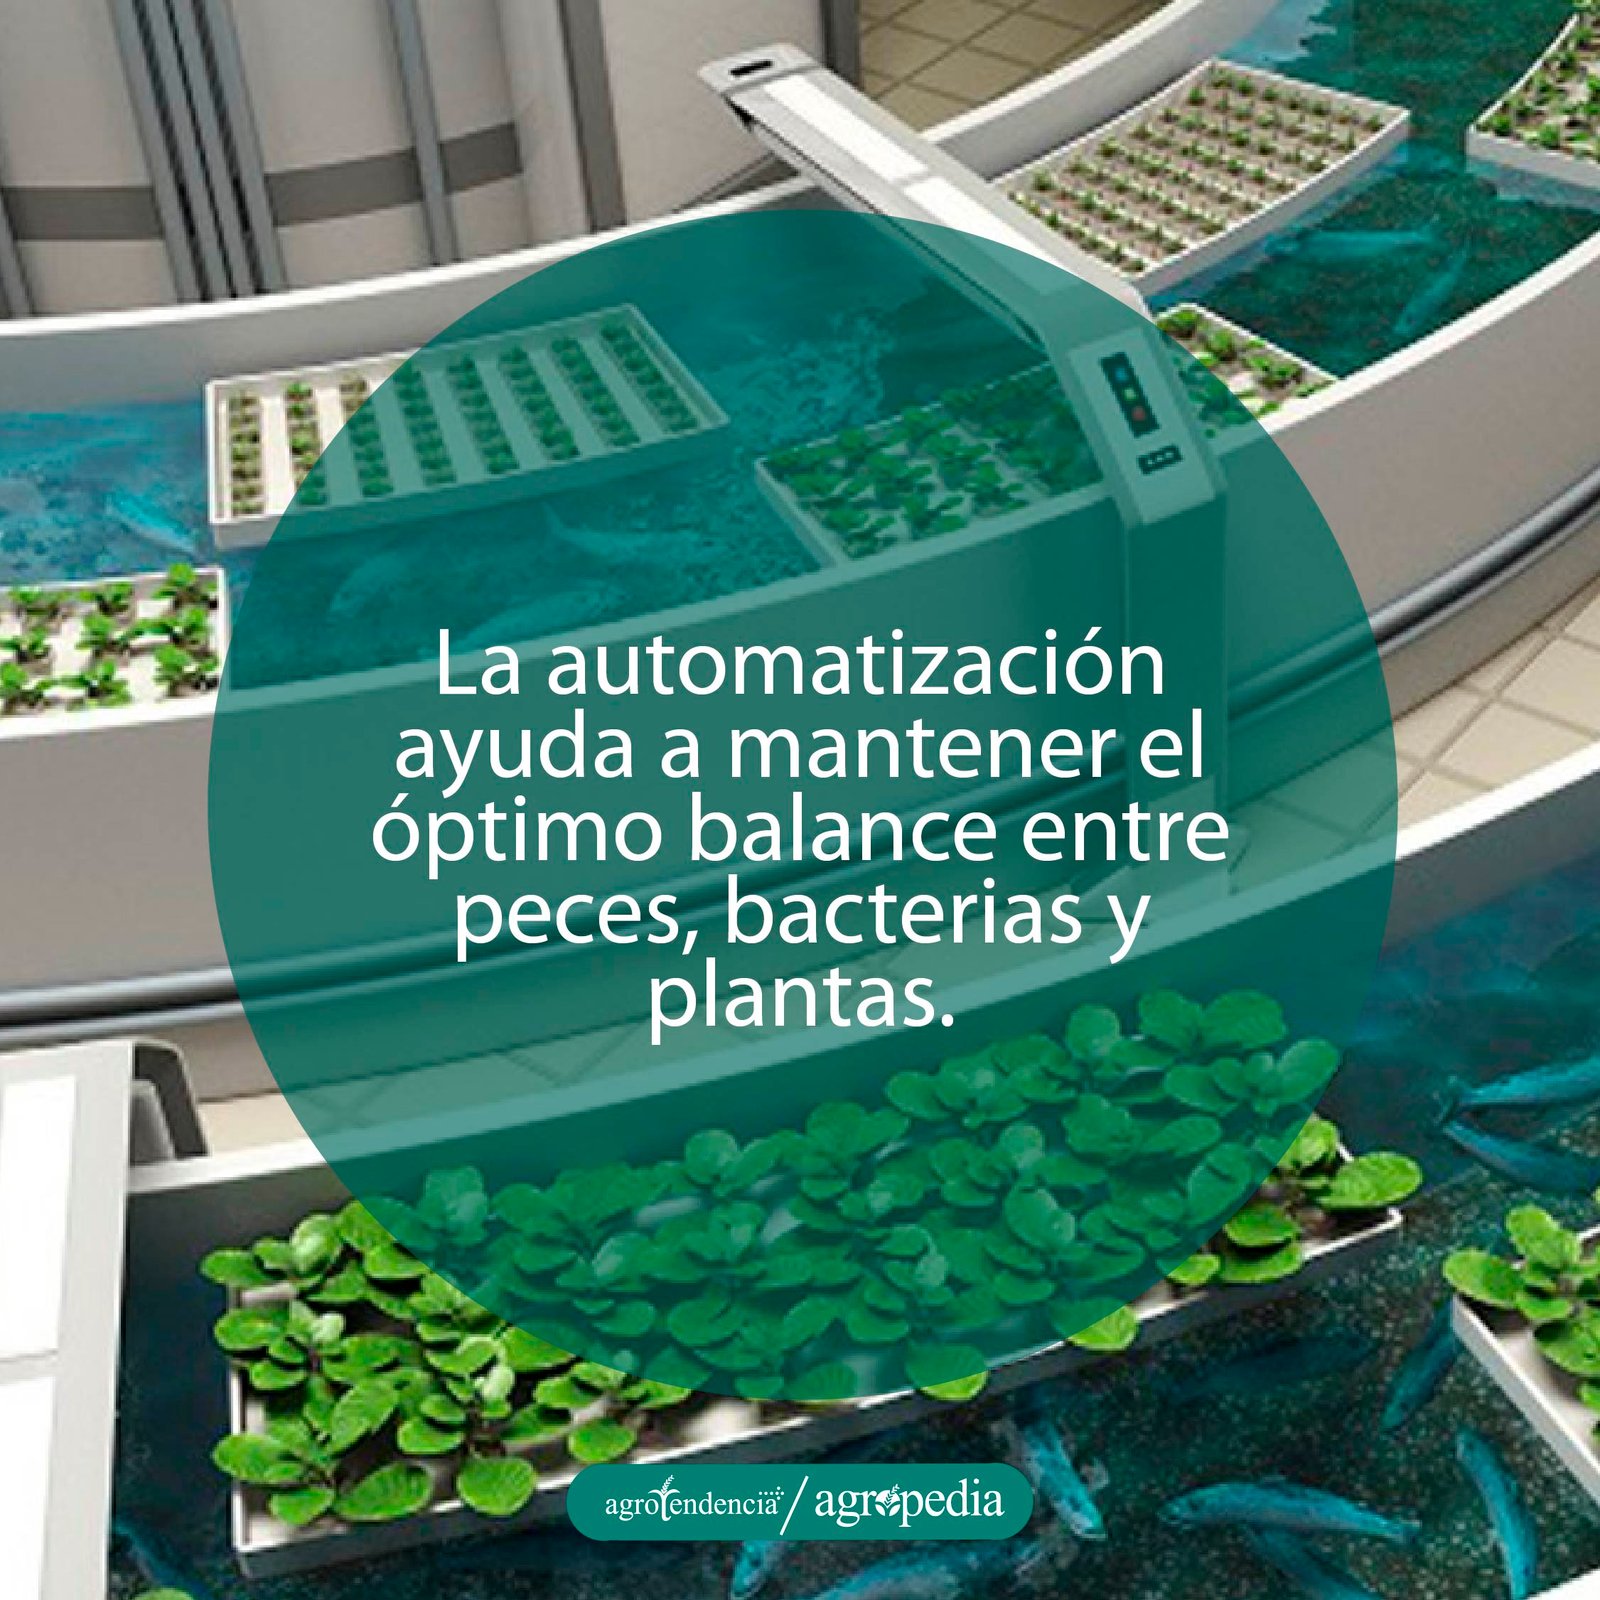 piscinas en forma de canales con peces y bandejas de cultivo bajo sistema automatizado